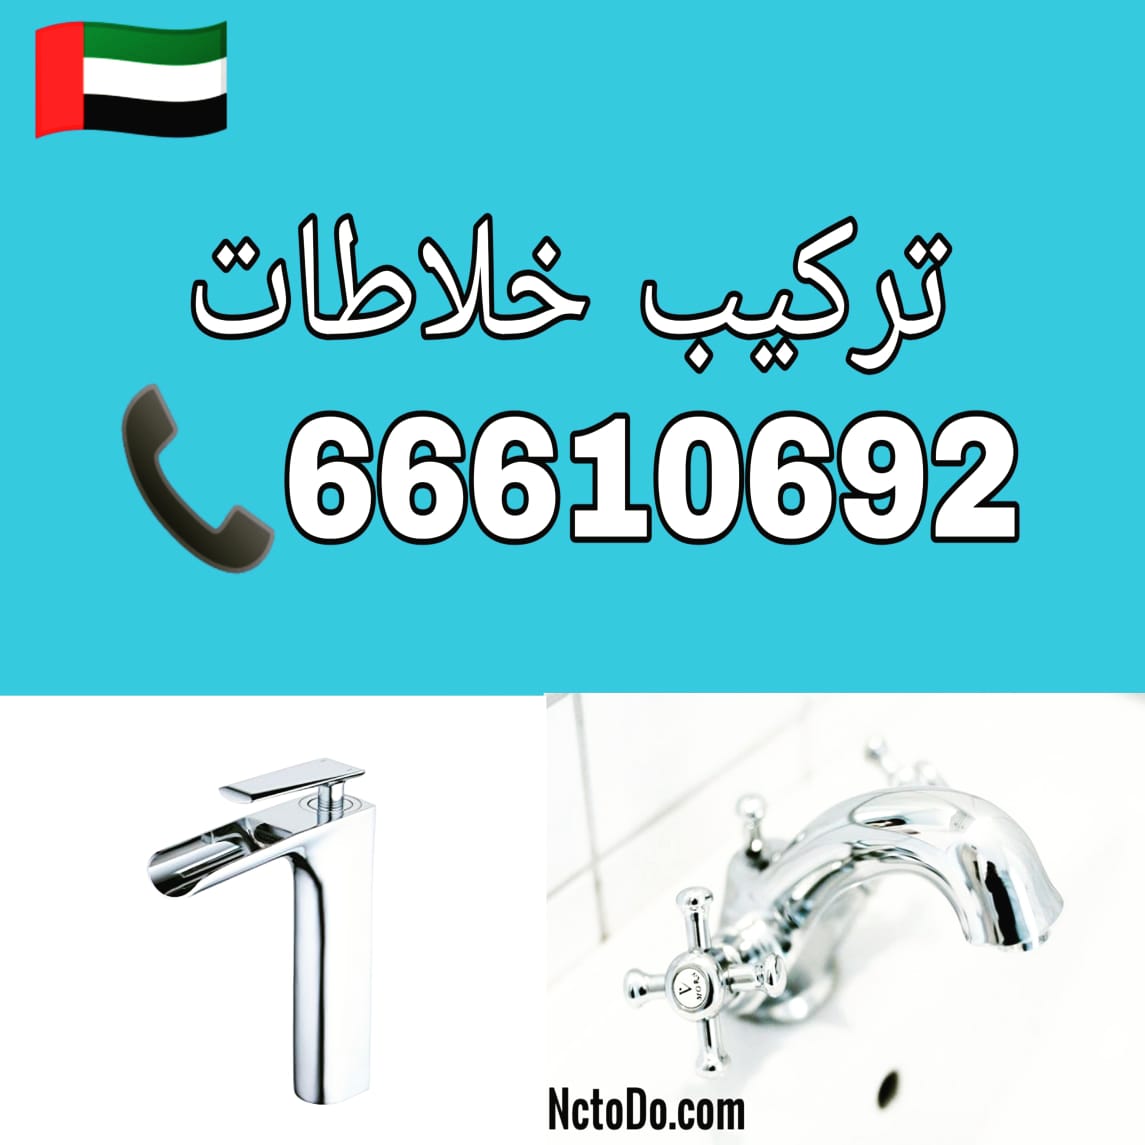 ادوات صحية فهد الاحمد / 66610692 / صيانة وتركيب فني صحي الاحمدي